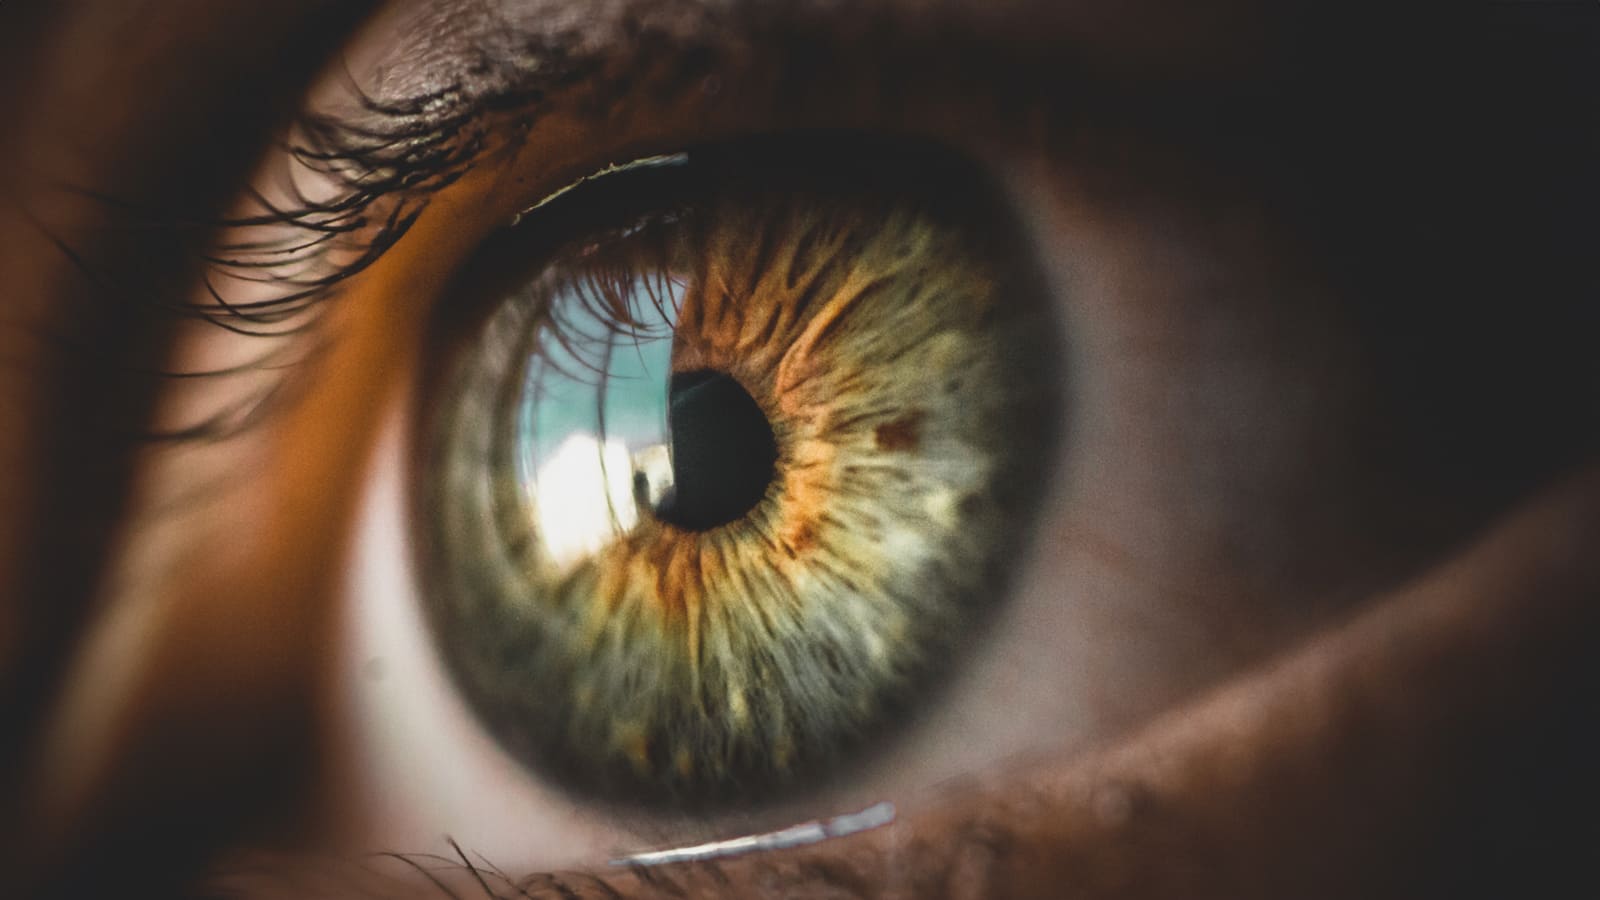 Imagem em close de olho humano exibido em detalhe, mostrando textura e características. O olho é de cor avelã com tom esverdeado. Imagem em ângulo lateral com fundo desfocado, ilustra a primeira córnea artificial nacional criada por cientistas da Unifesp.